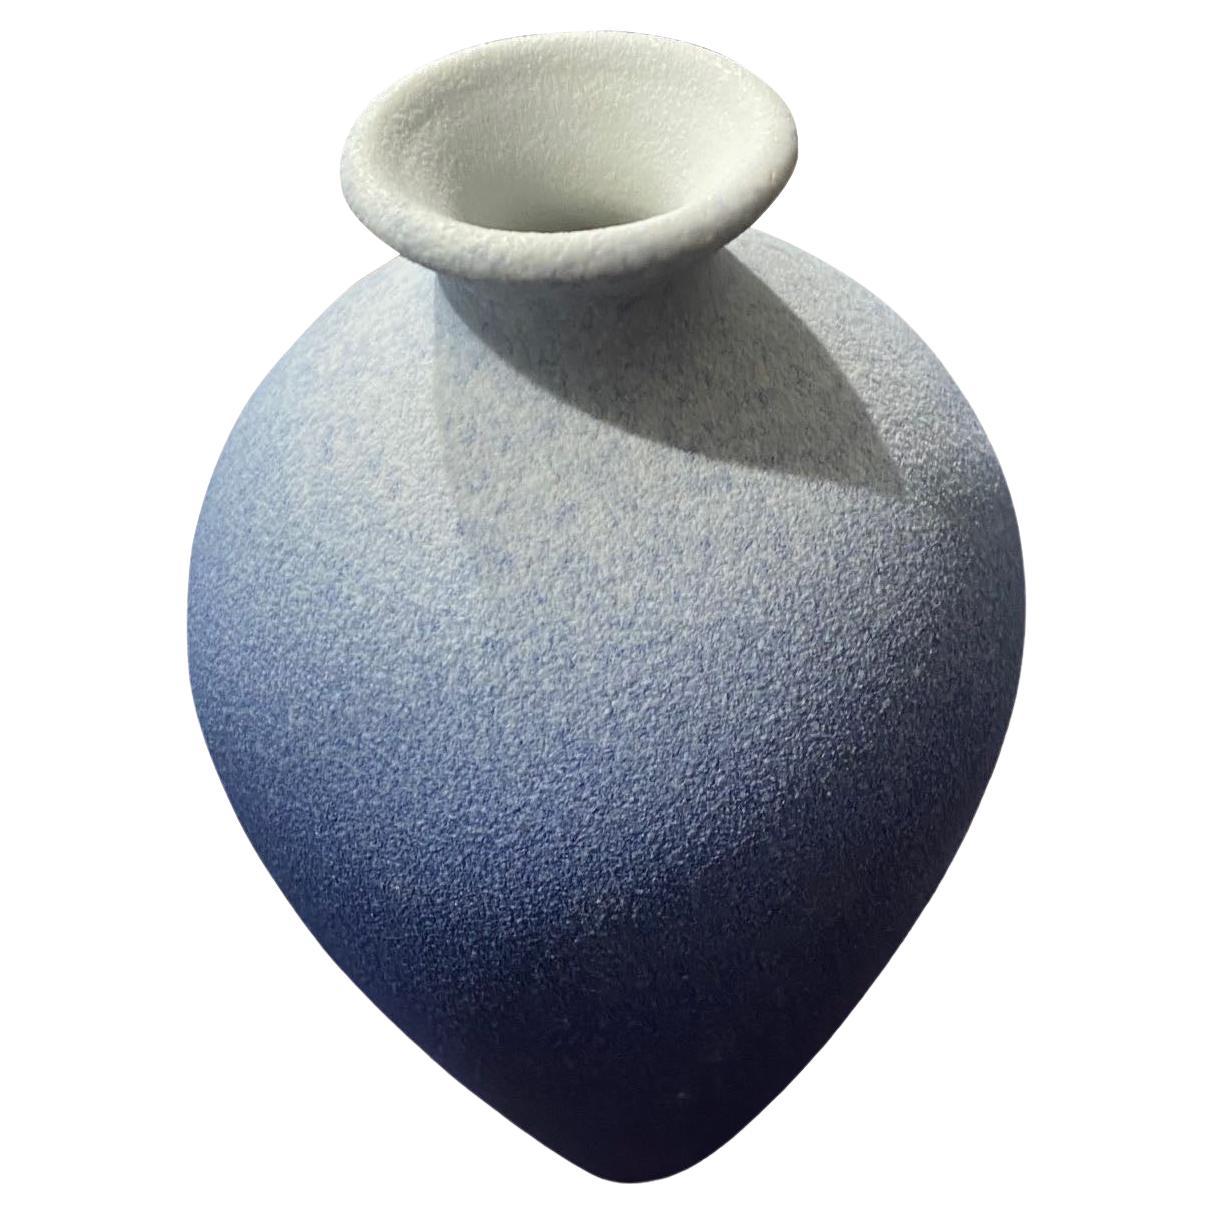 Zeitgenössische chinesische ombre blau glasierte Vase.
Klassische Form mit schmaler Ausgussöffnung.
Teil einer großen Sammlung.